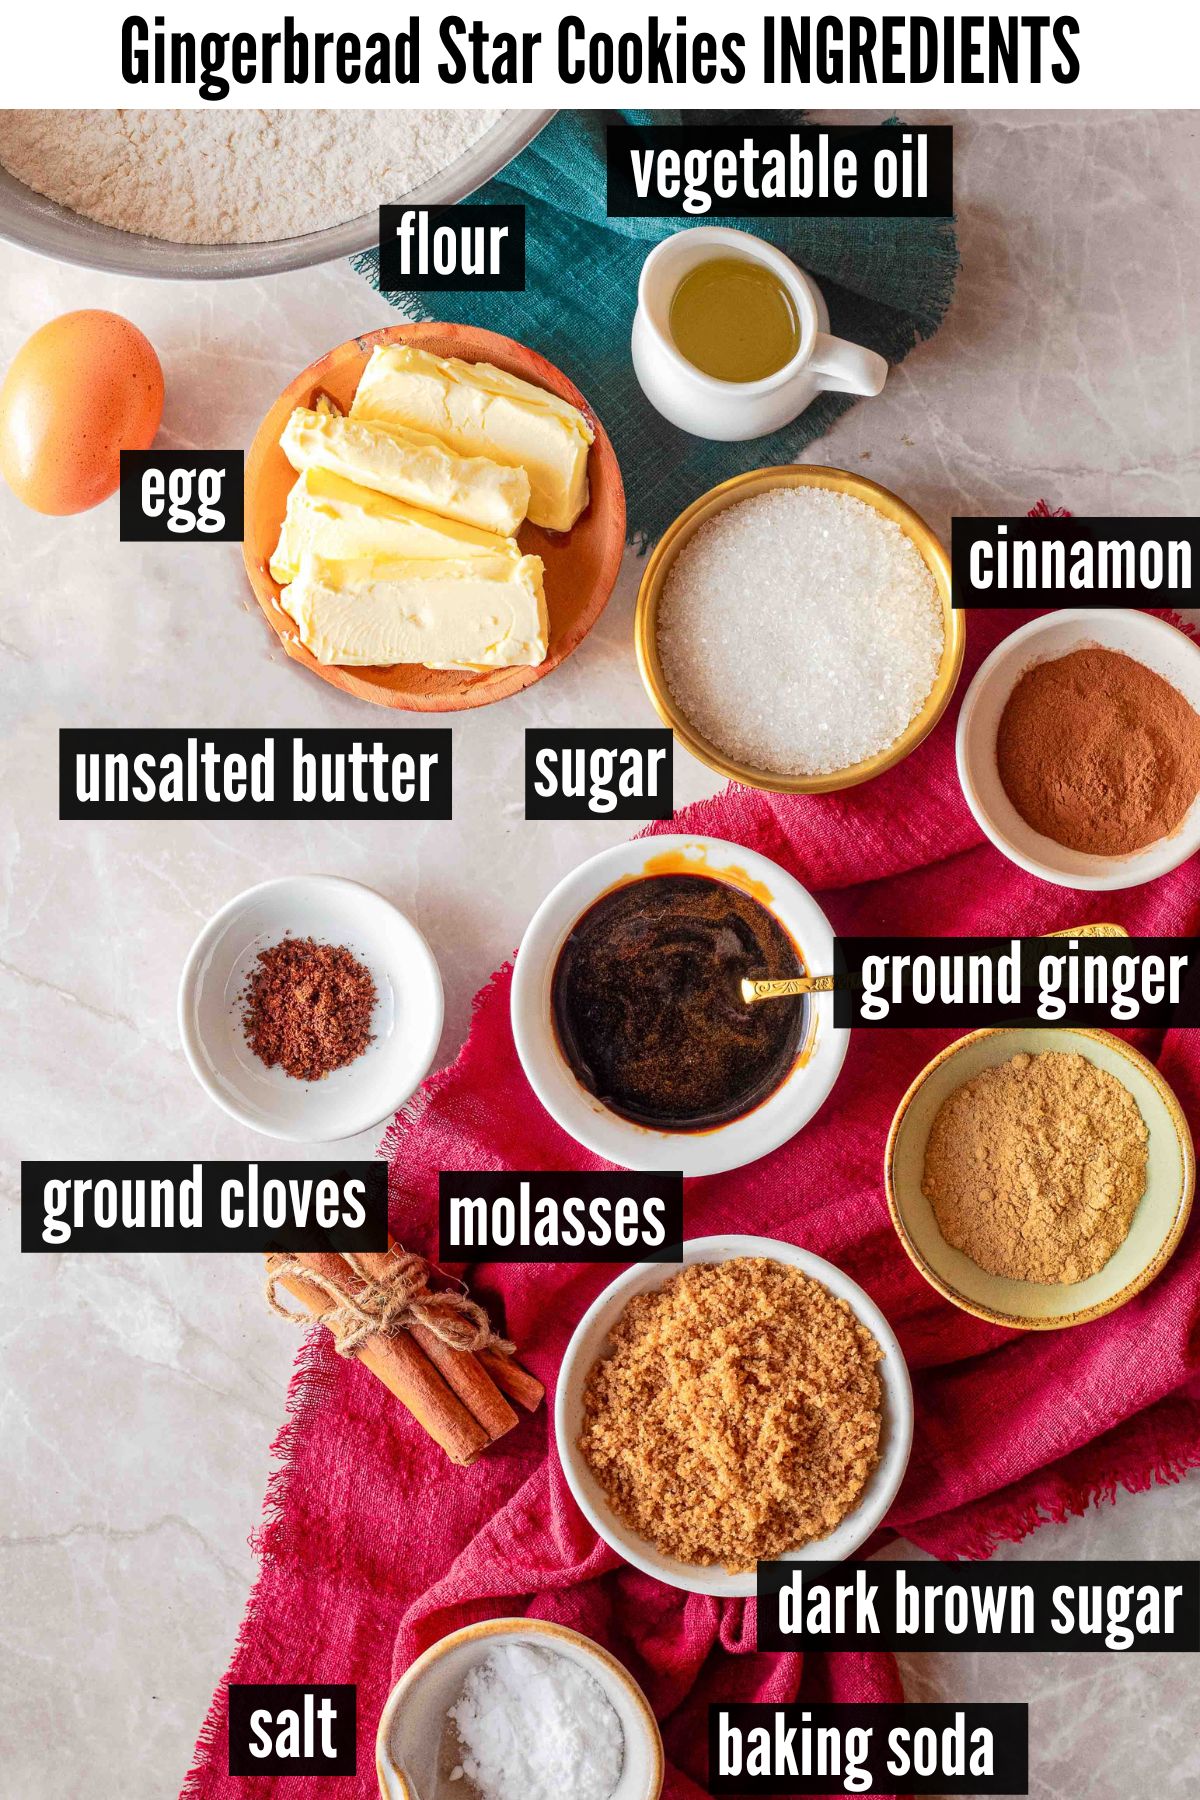 gingerbread star cookies labelled ingredients.